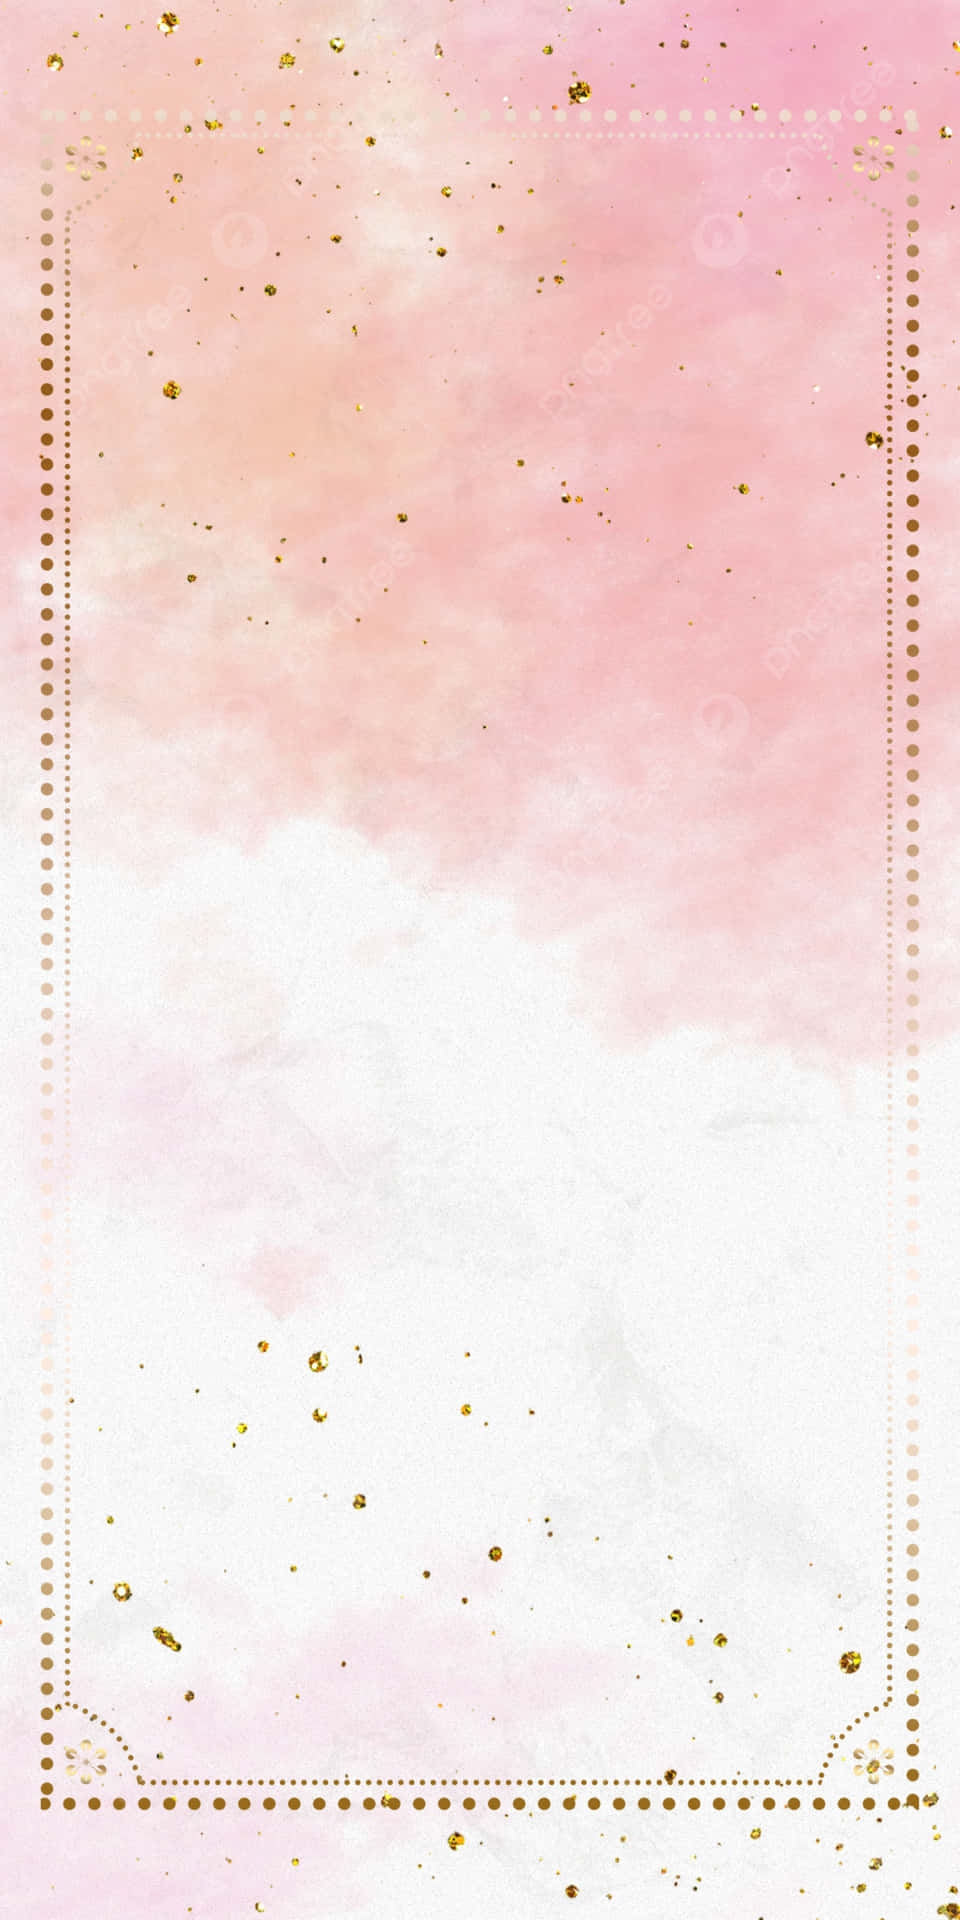 Einezarte Kombination Aus Pink Und Gold Für Einen Lebendigen Look. Wallpaper